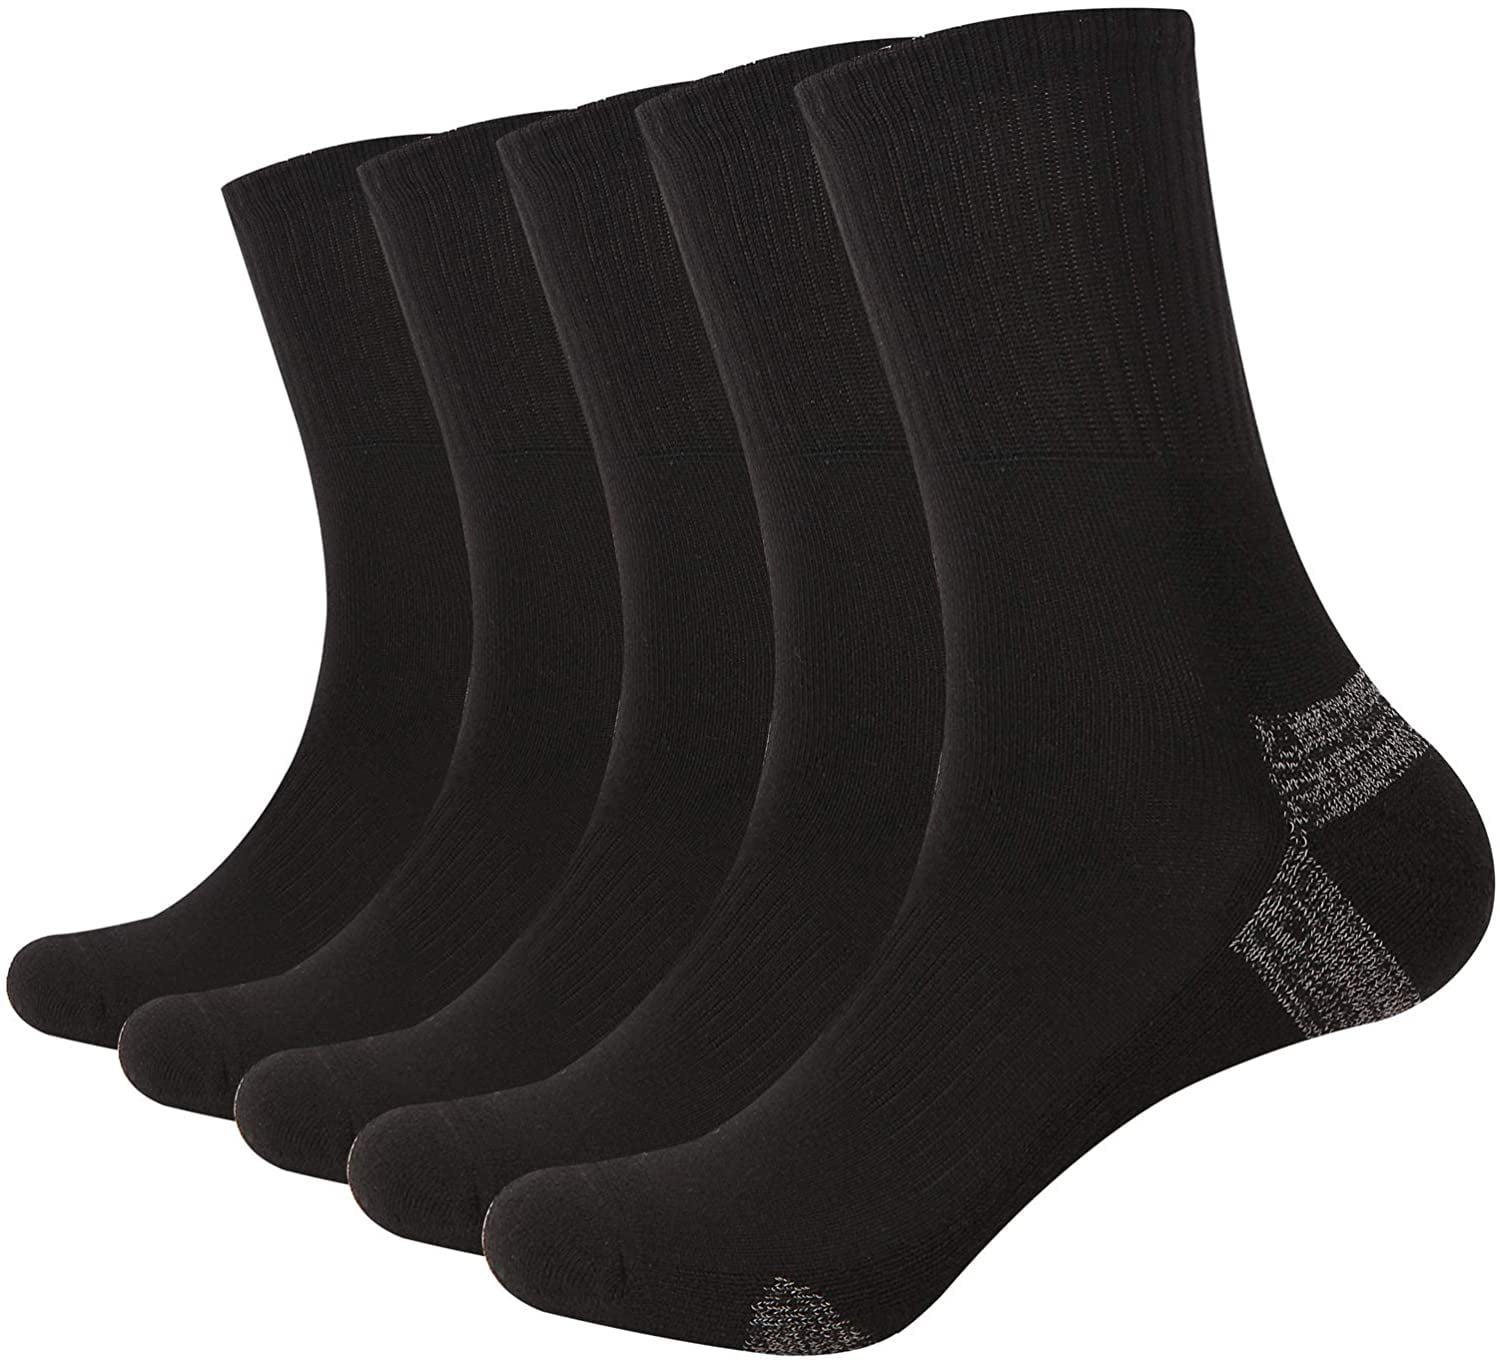 Sock Amazing No Show Socks Black & White Bamboo Socks for Men Women 8 Pack Cushion Socks Casual Socks